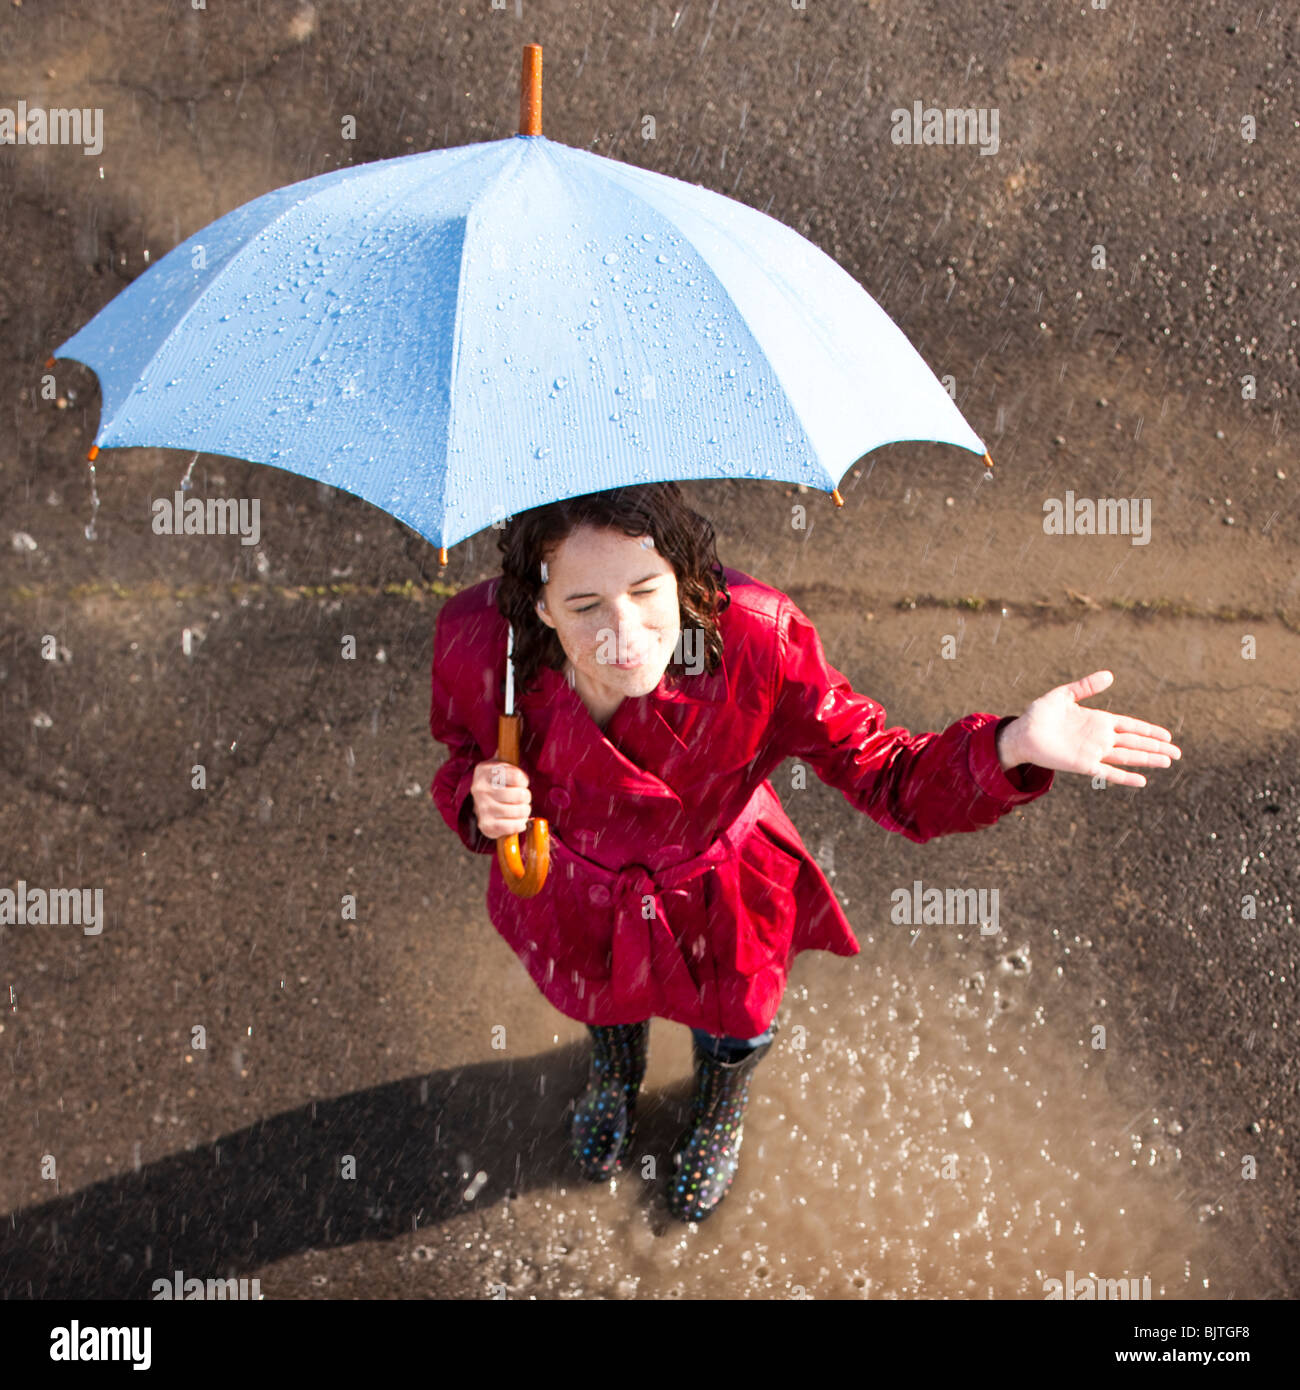 Umbrella Rain Woman